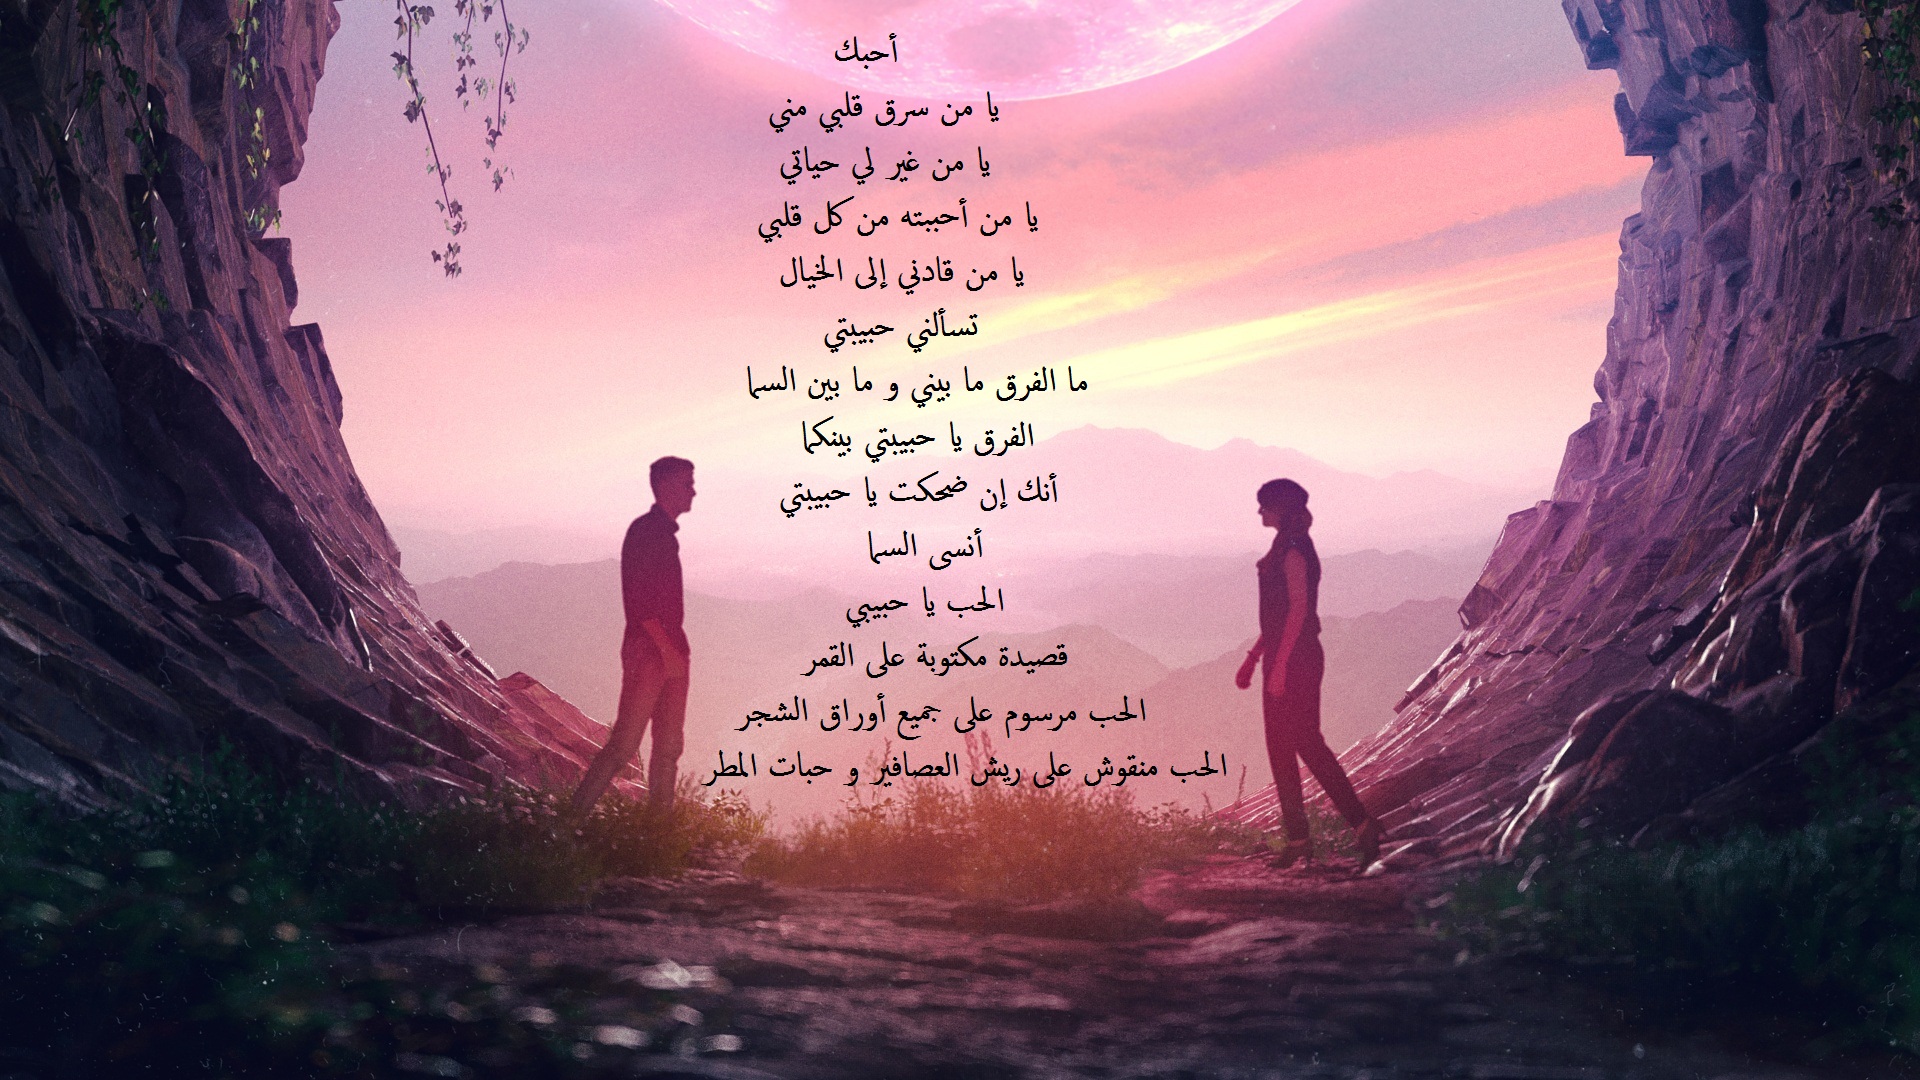 خلفية رومانسية مرسومة و ملونة مكتوب عليها قصيدة حب.